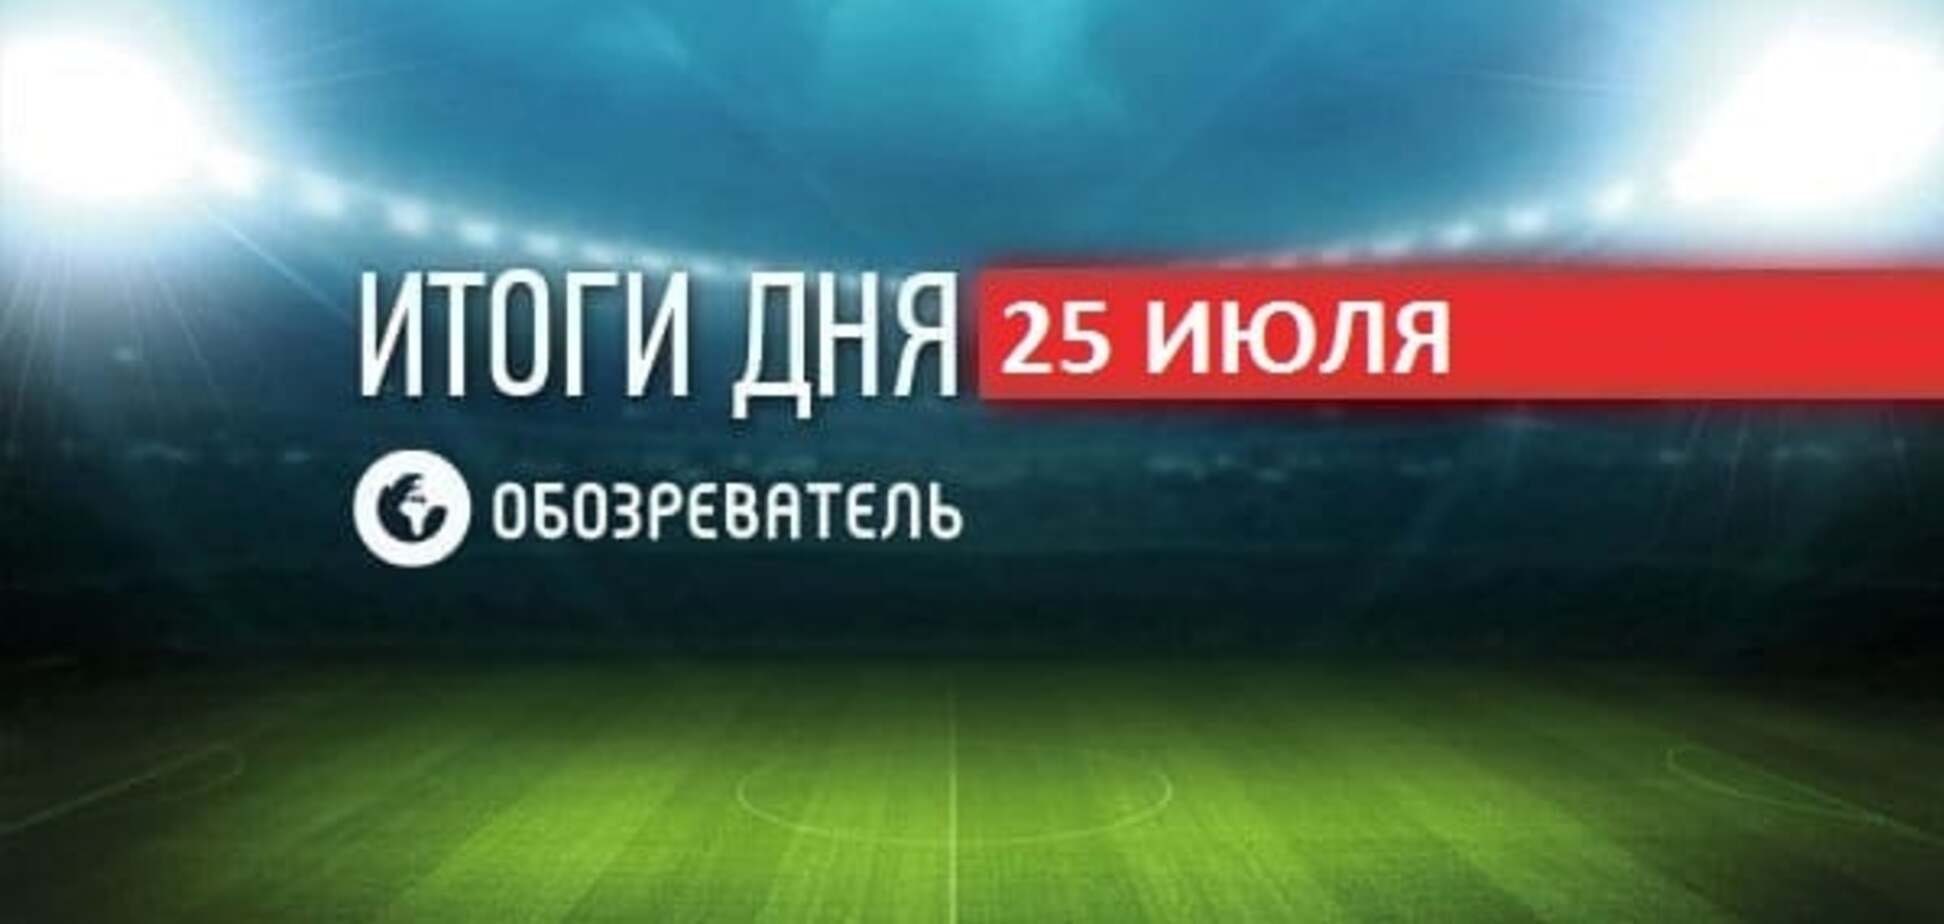 Футболістам клубу Ліги чемпіонів вручили медалі з помилкою в слові 'Росія'. Спортивні підсумки за 25 липня